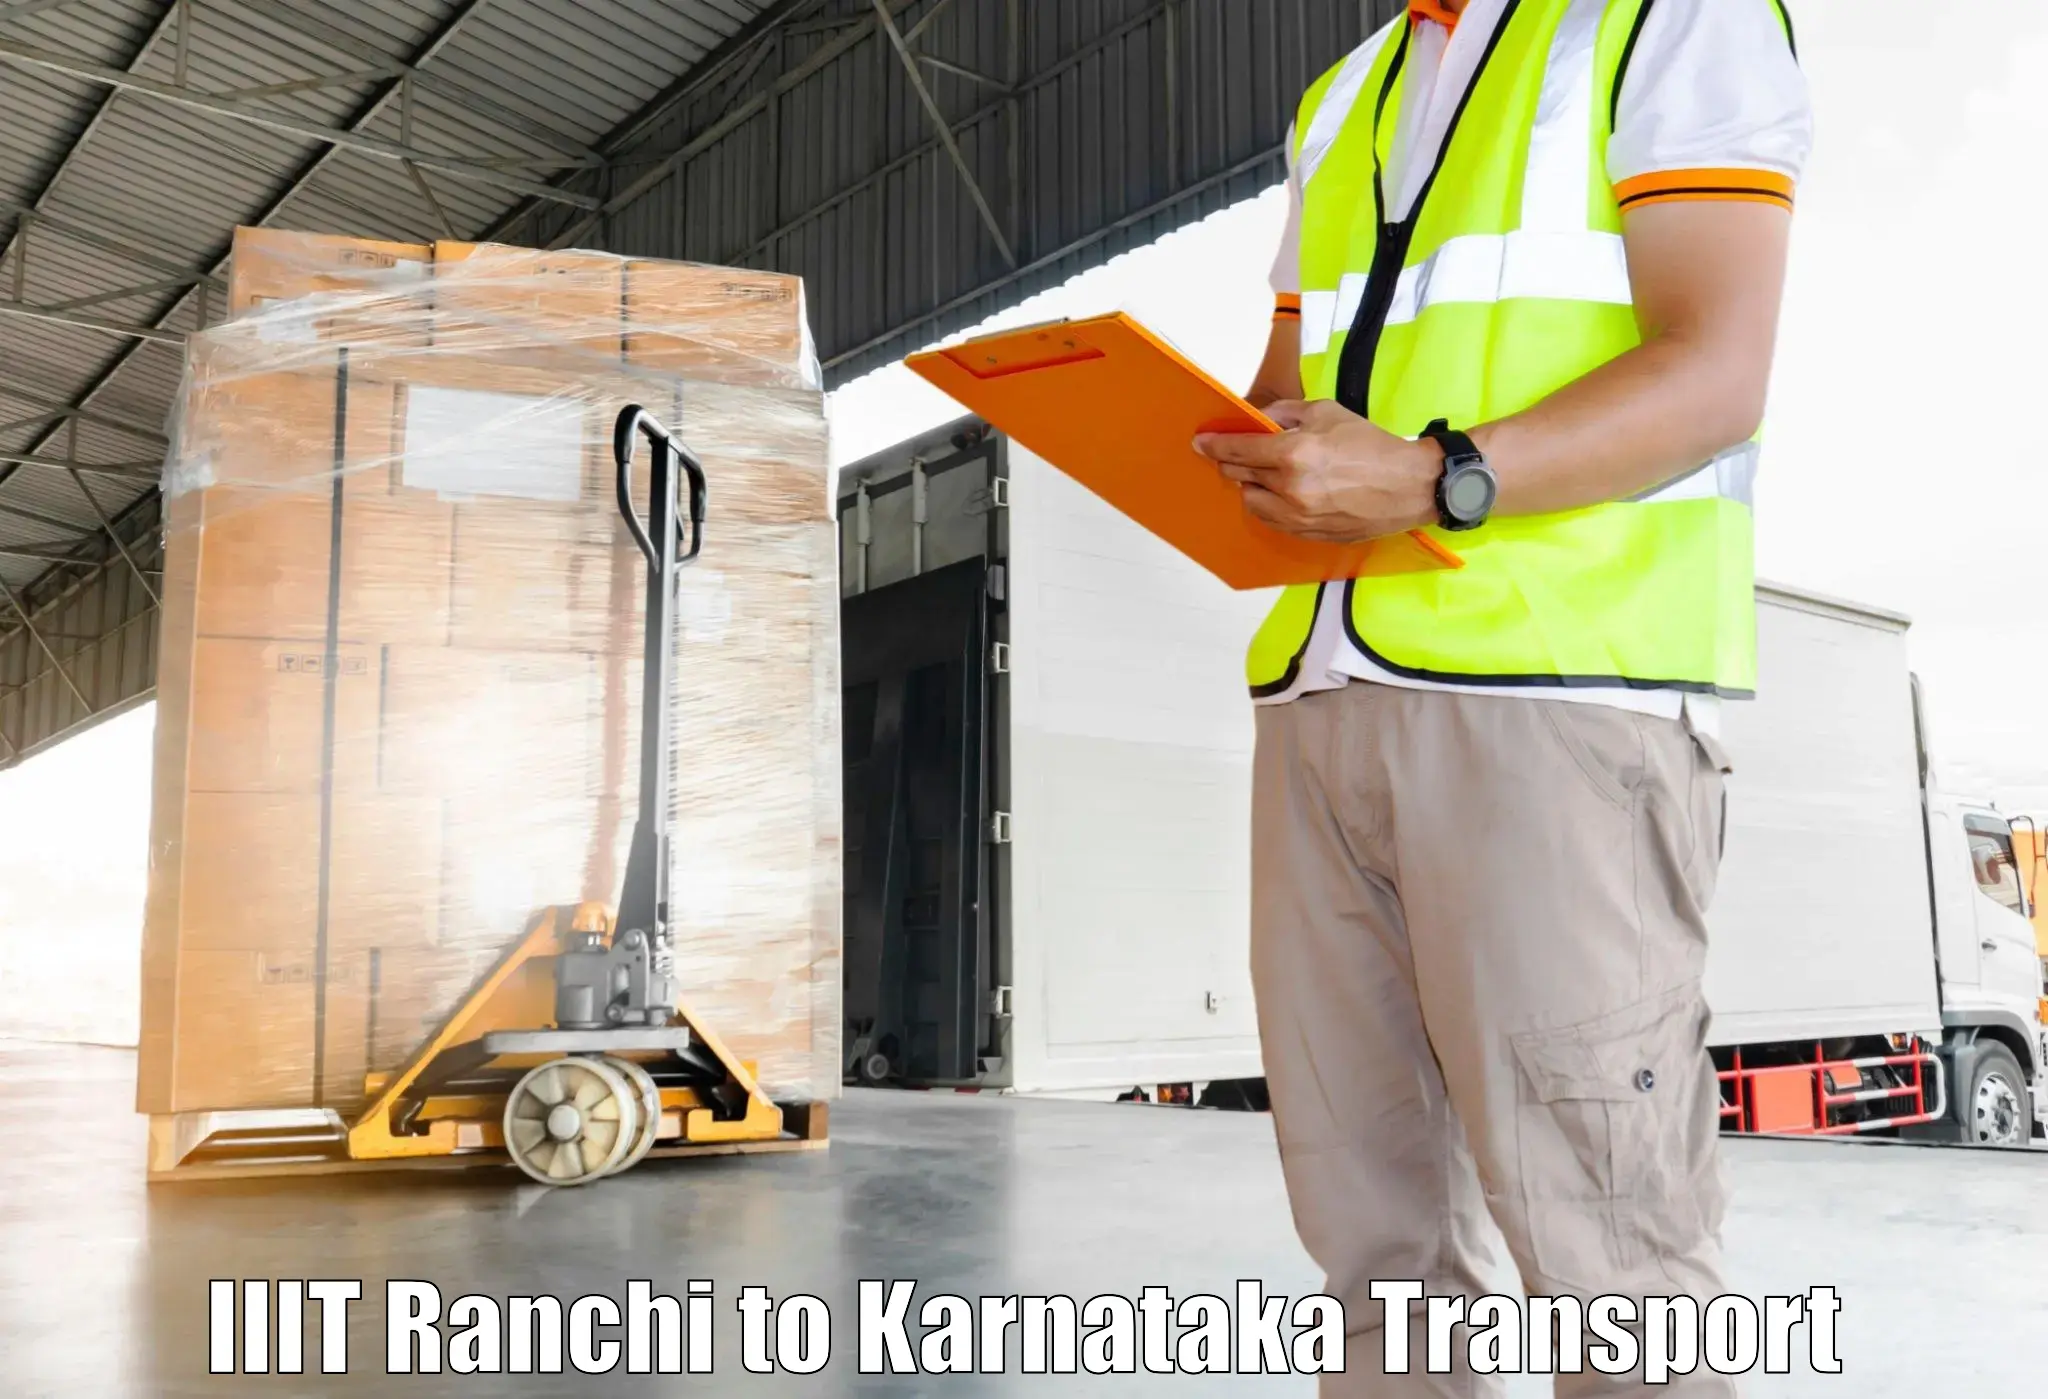 Nearest transport service IIIT Ranchi to Harpanahalli